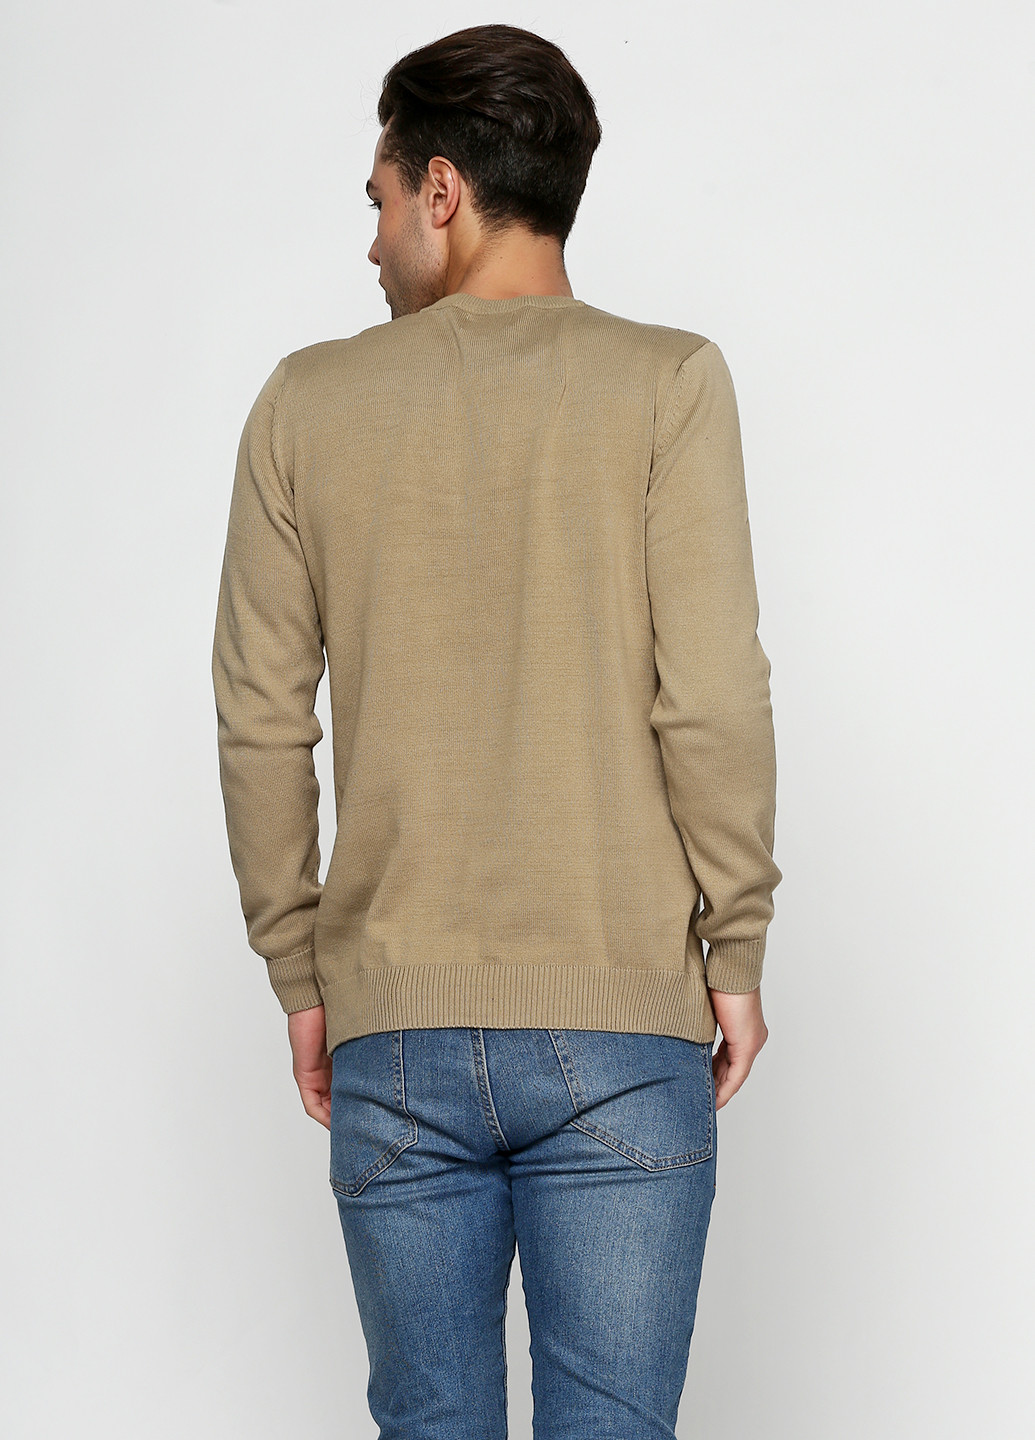 Светло-коричневый демисезонный пуловер пуловер Яavin